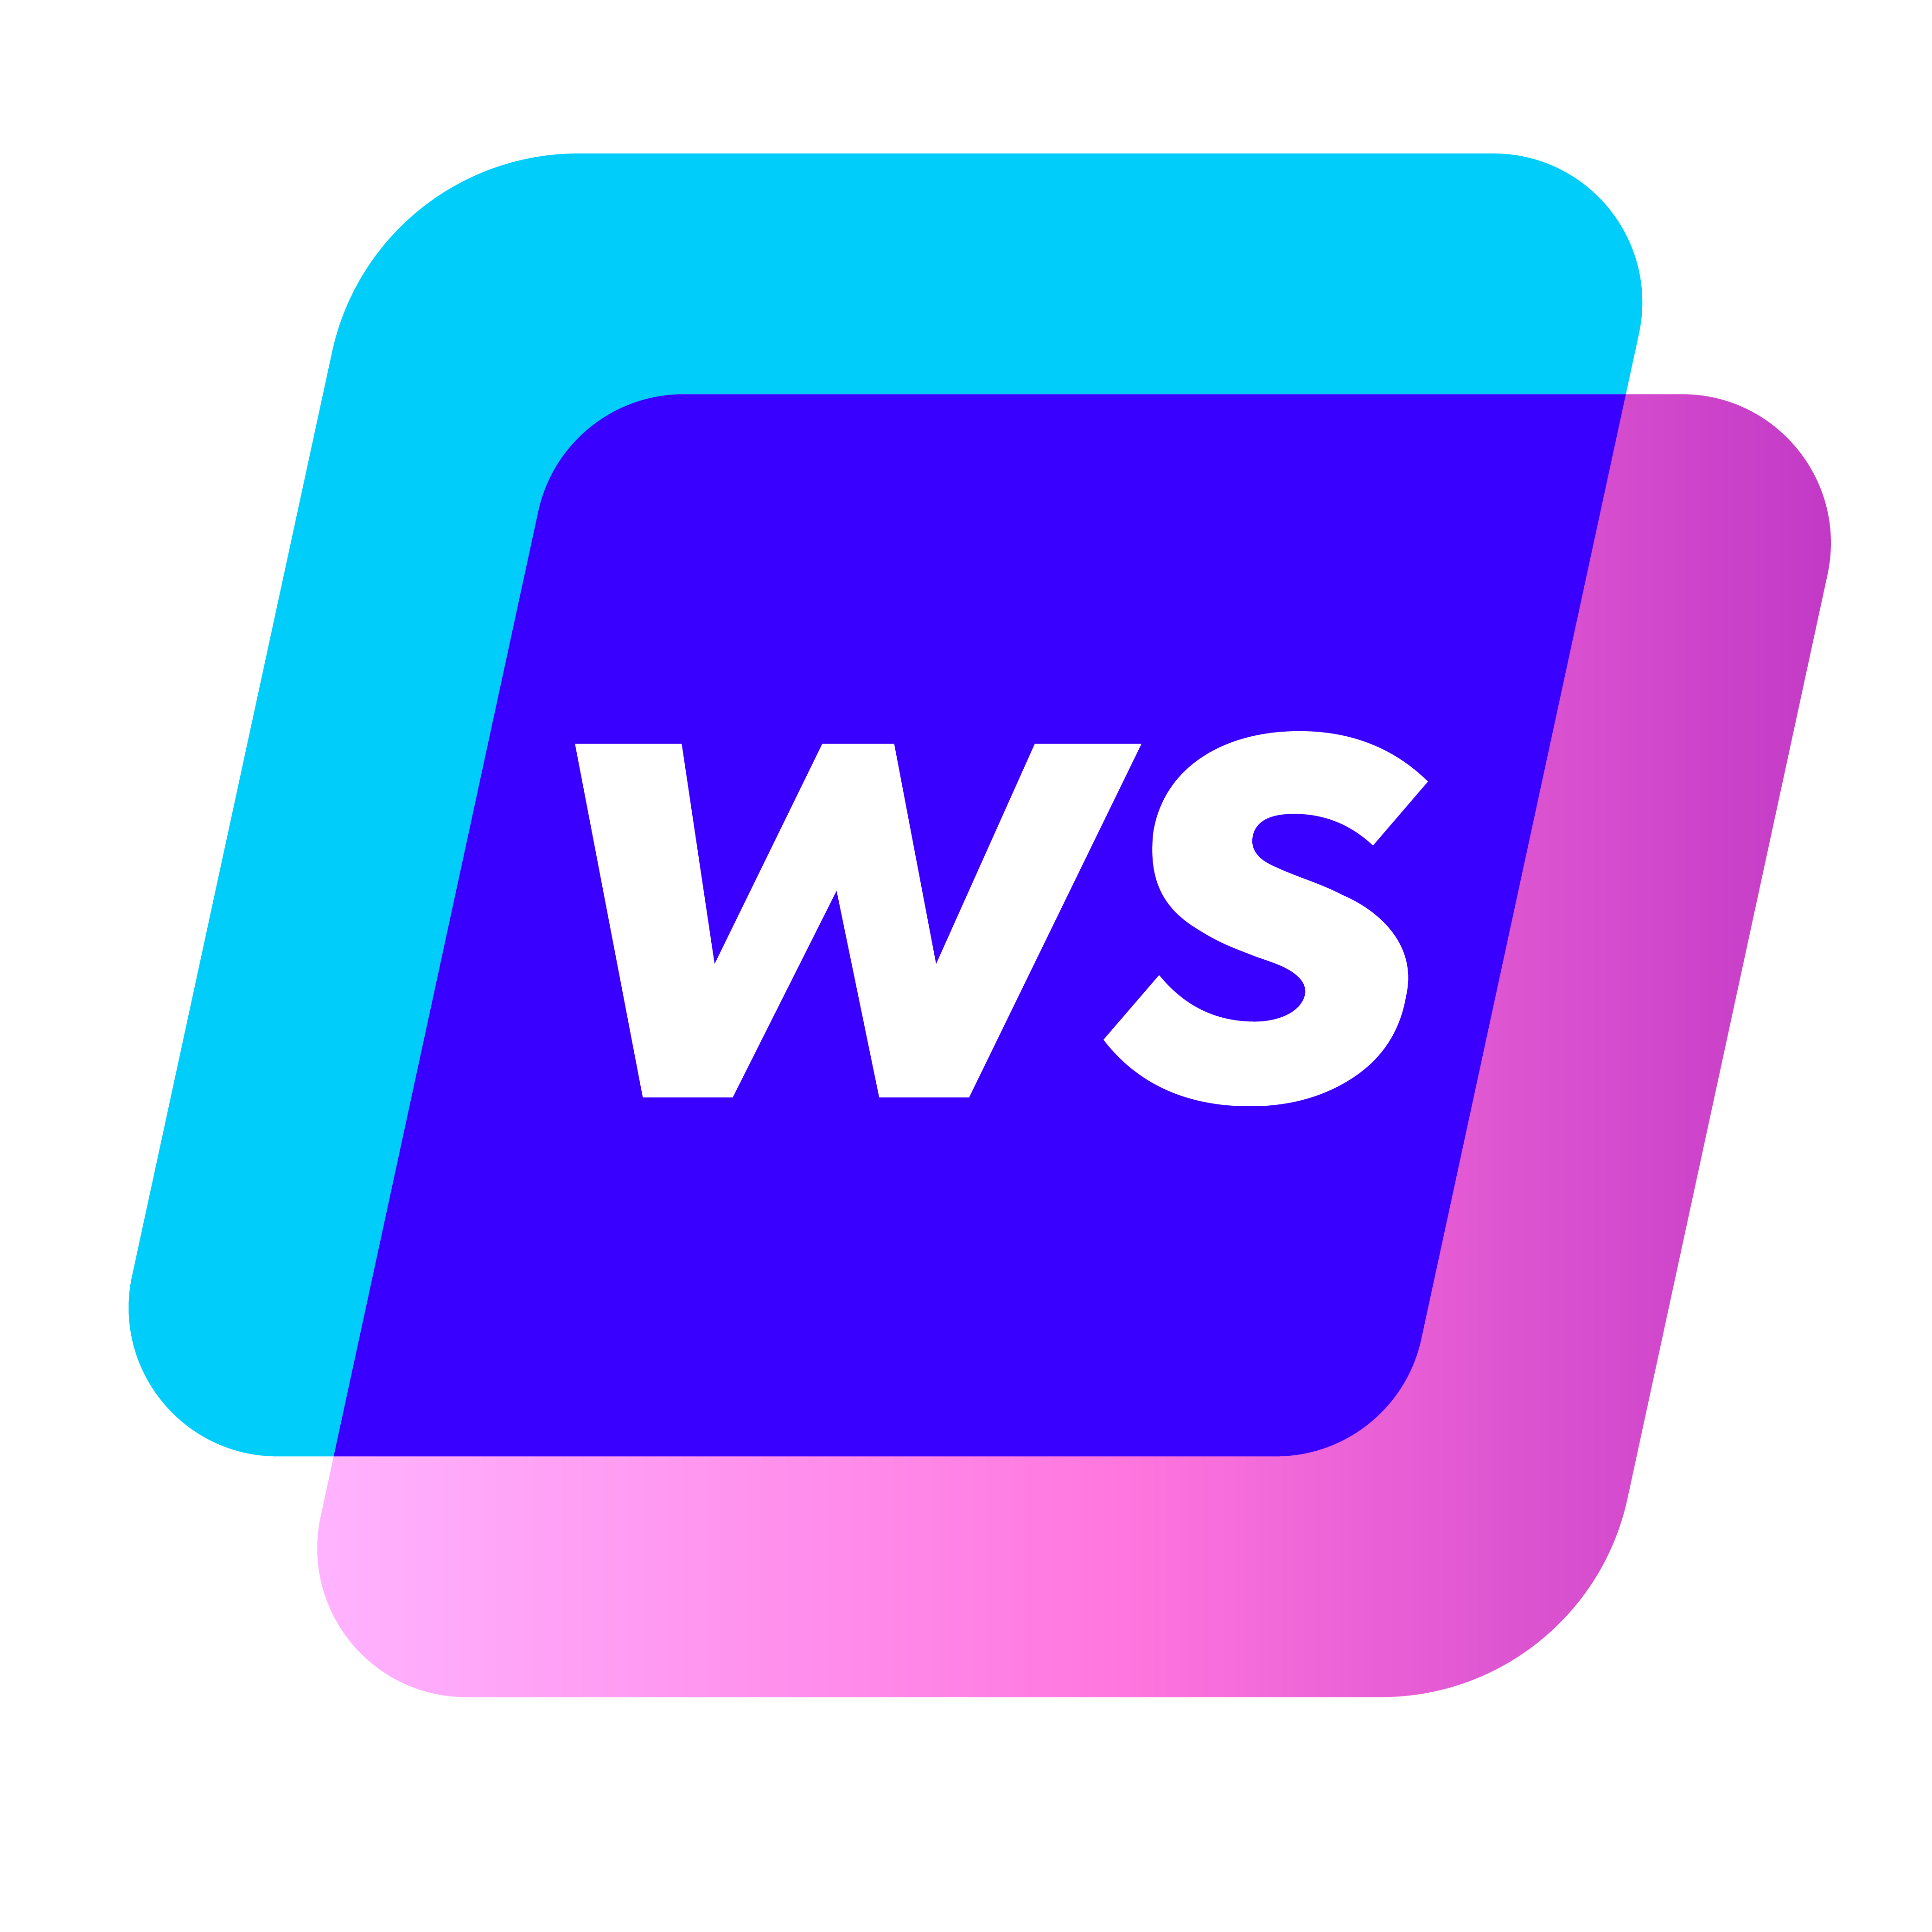 Writesonic Logo